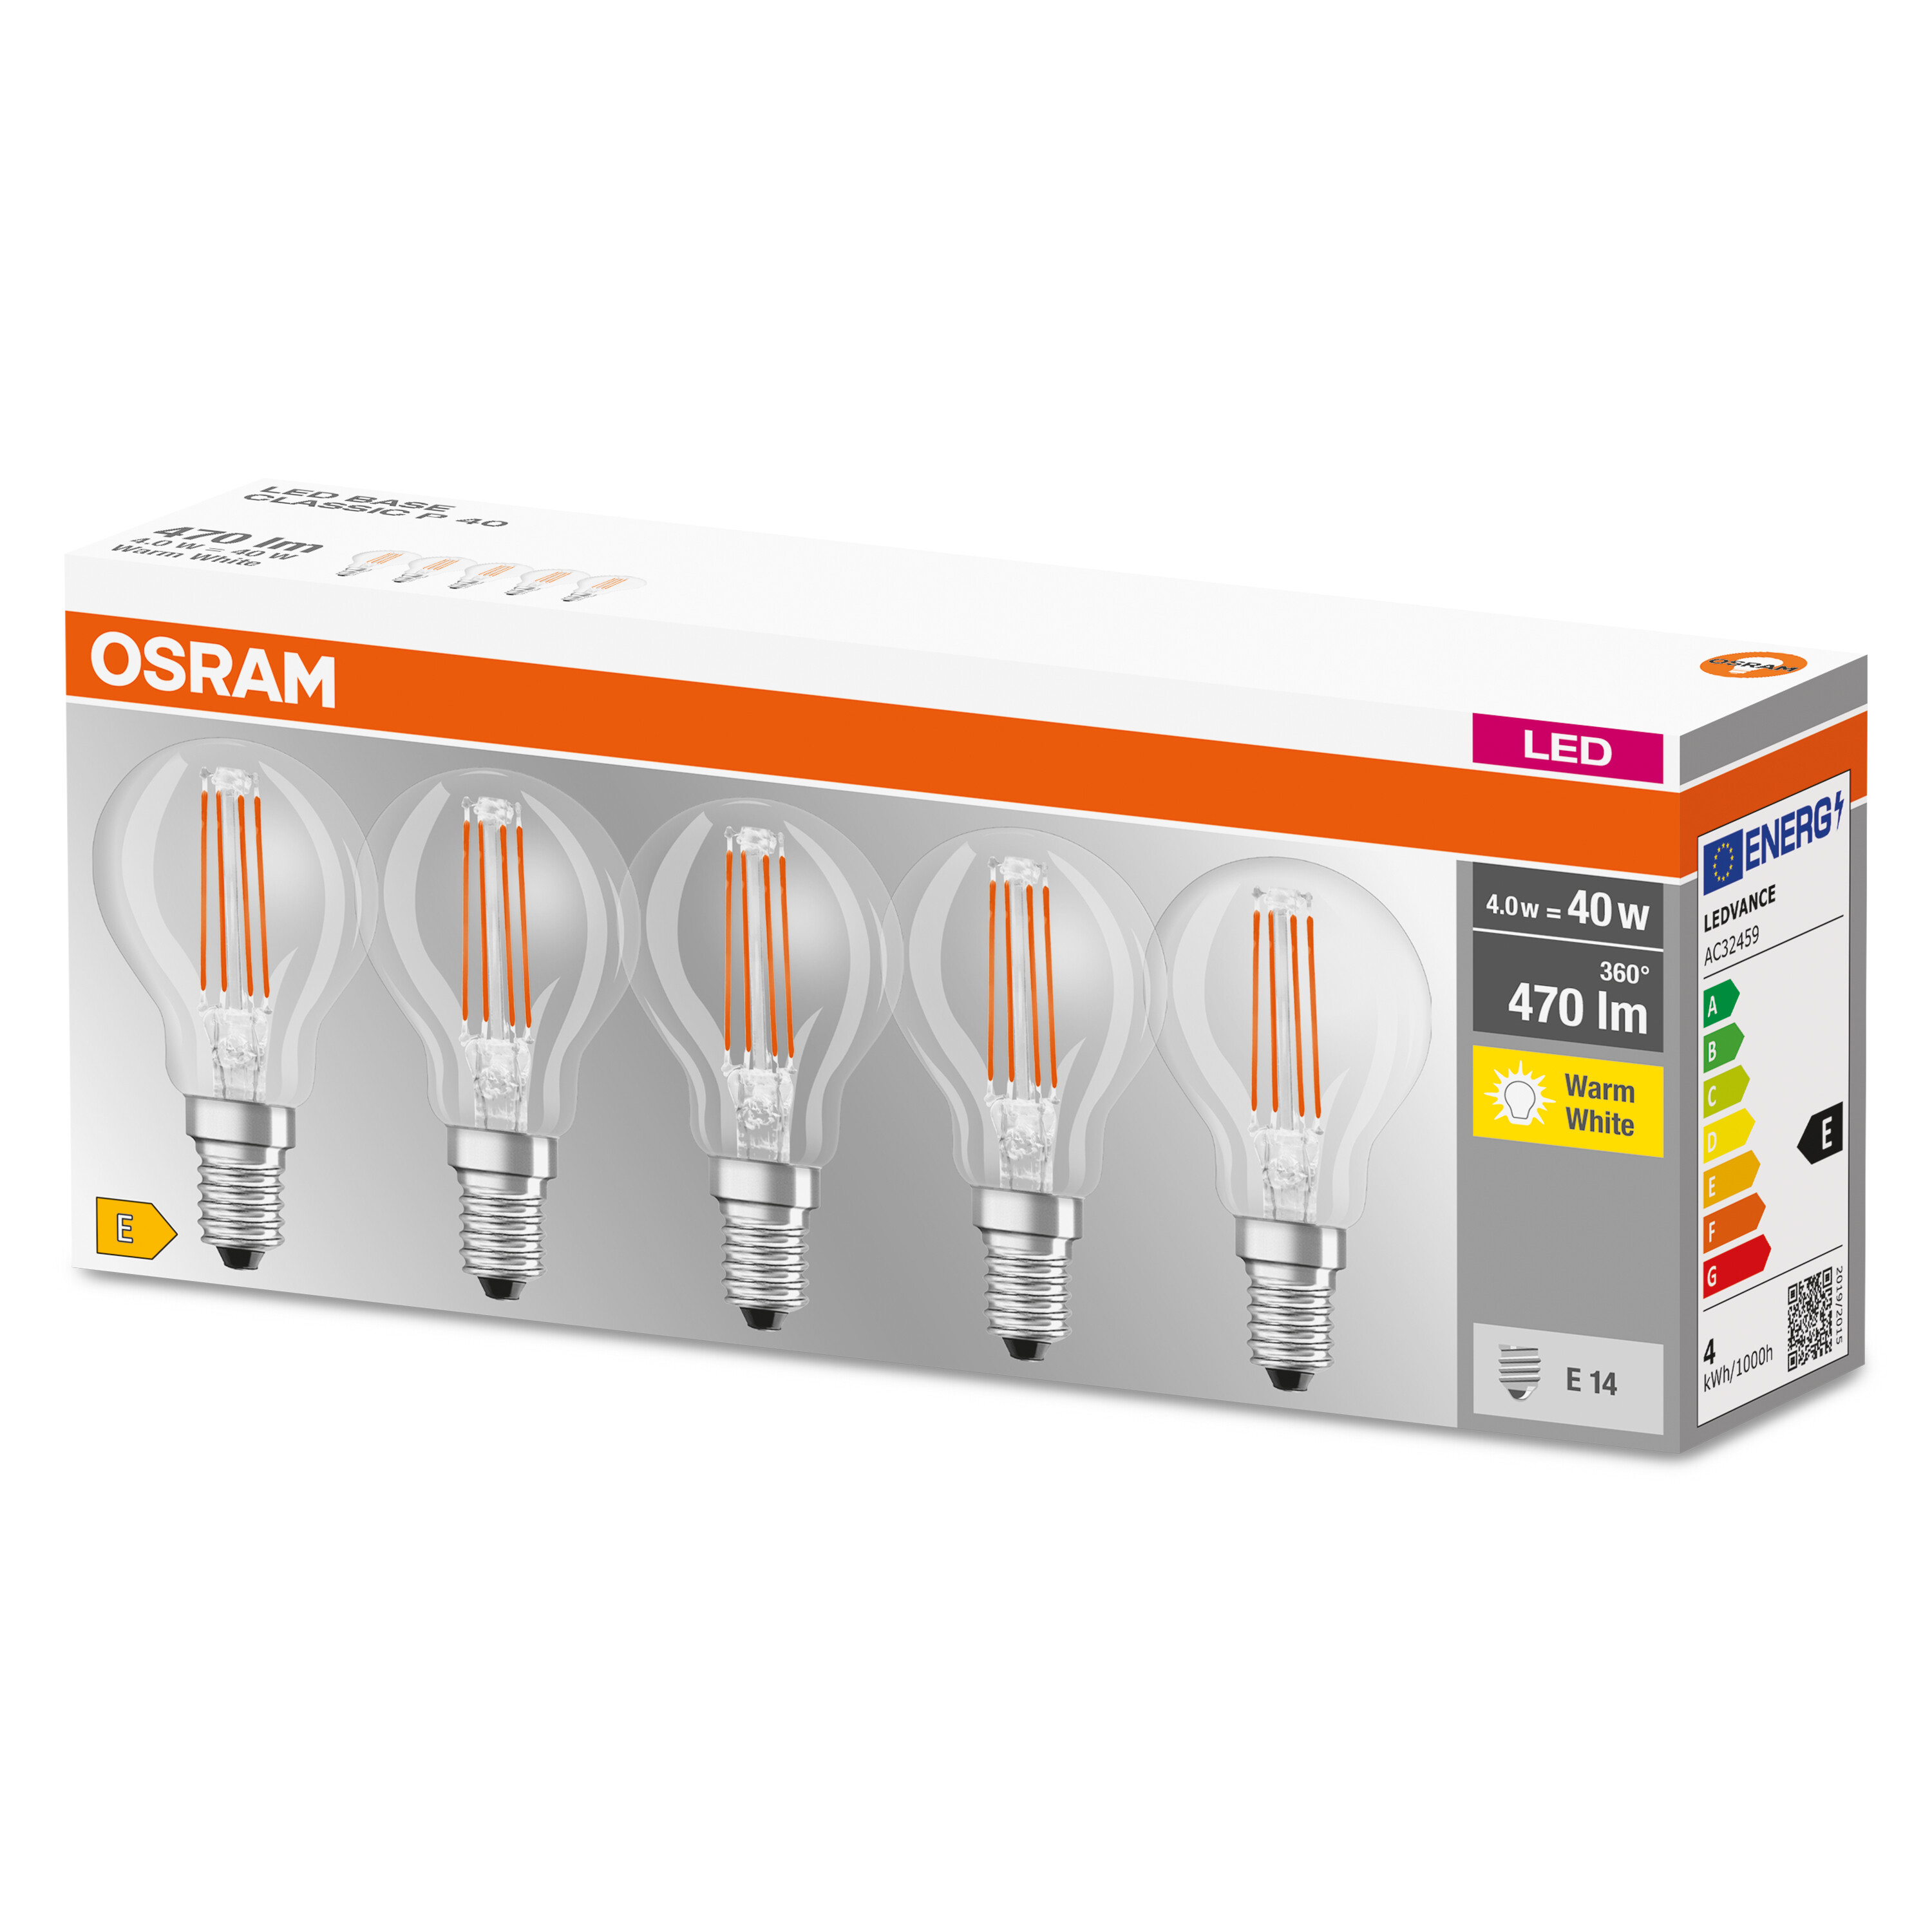 OSRAM  LED BASE CLASSIC P Warmweiß Lampe LED 470 Lumen